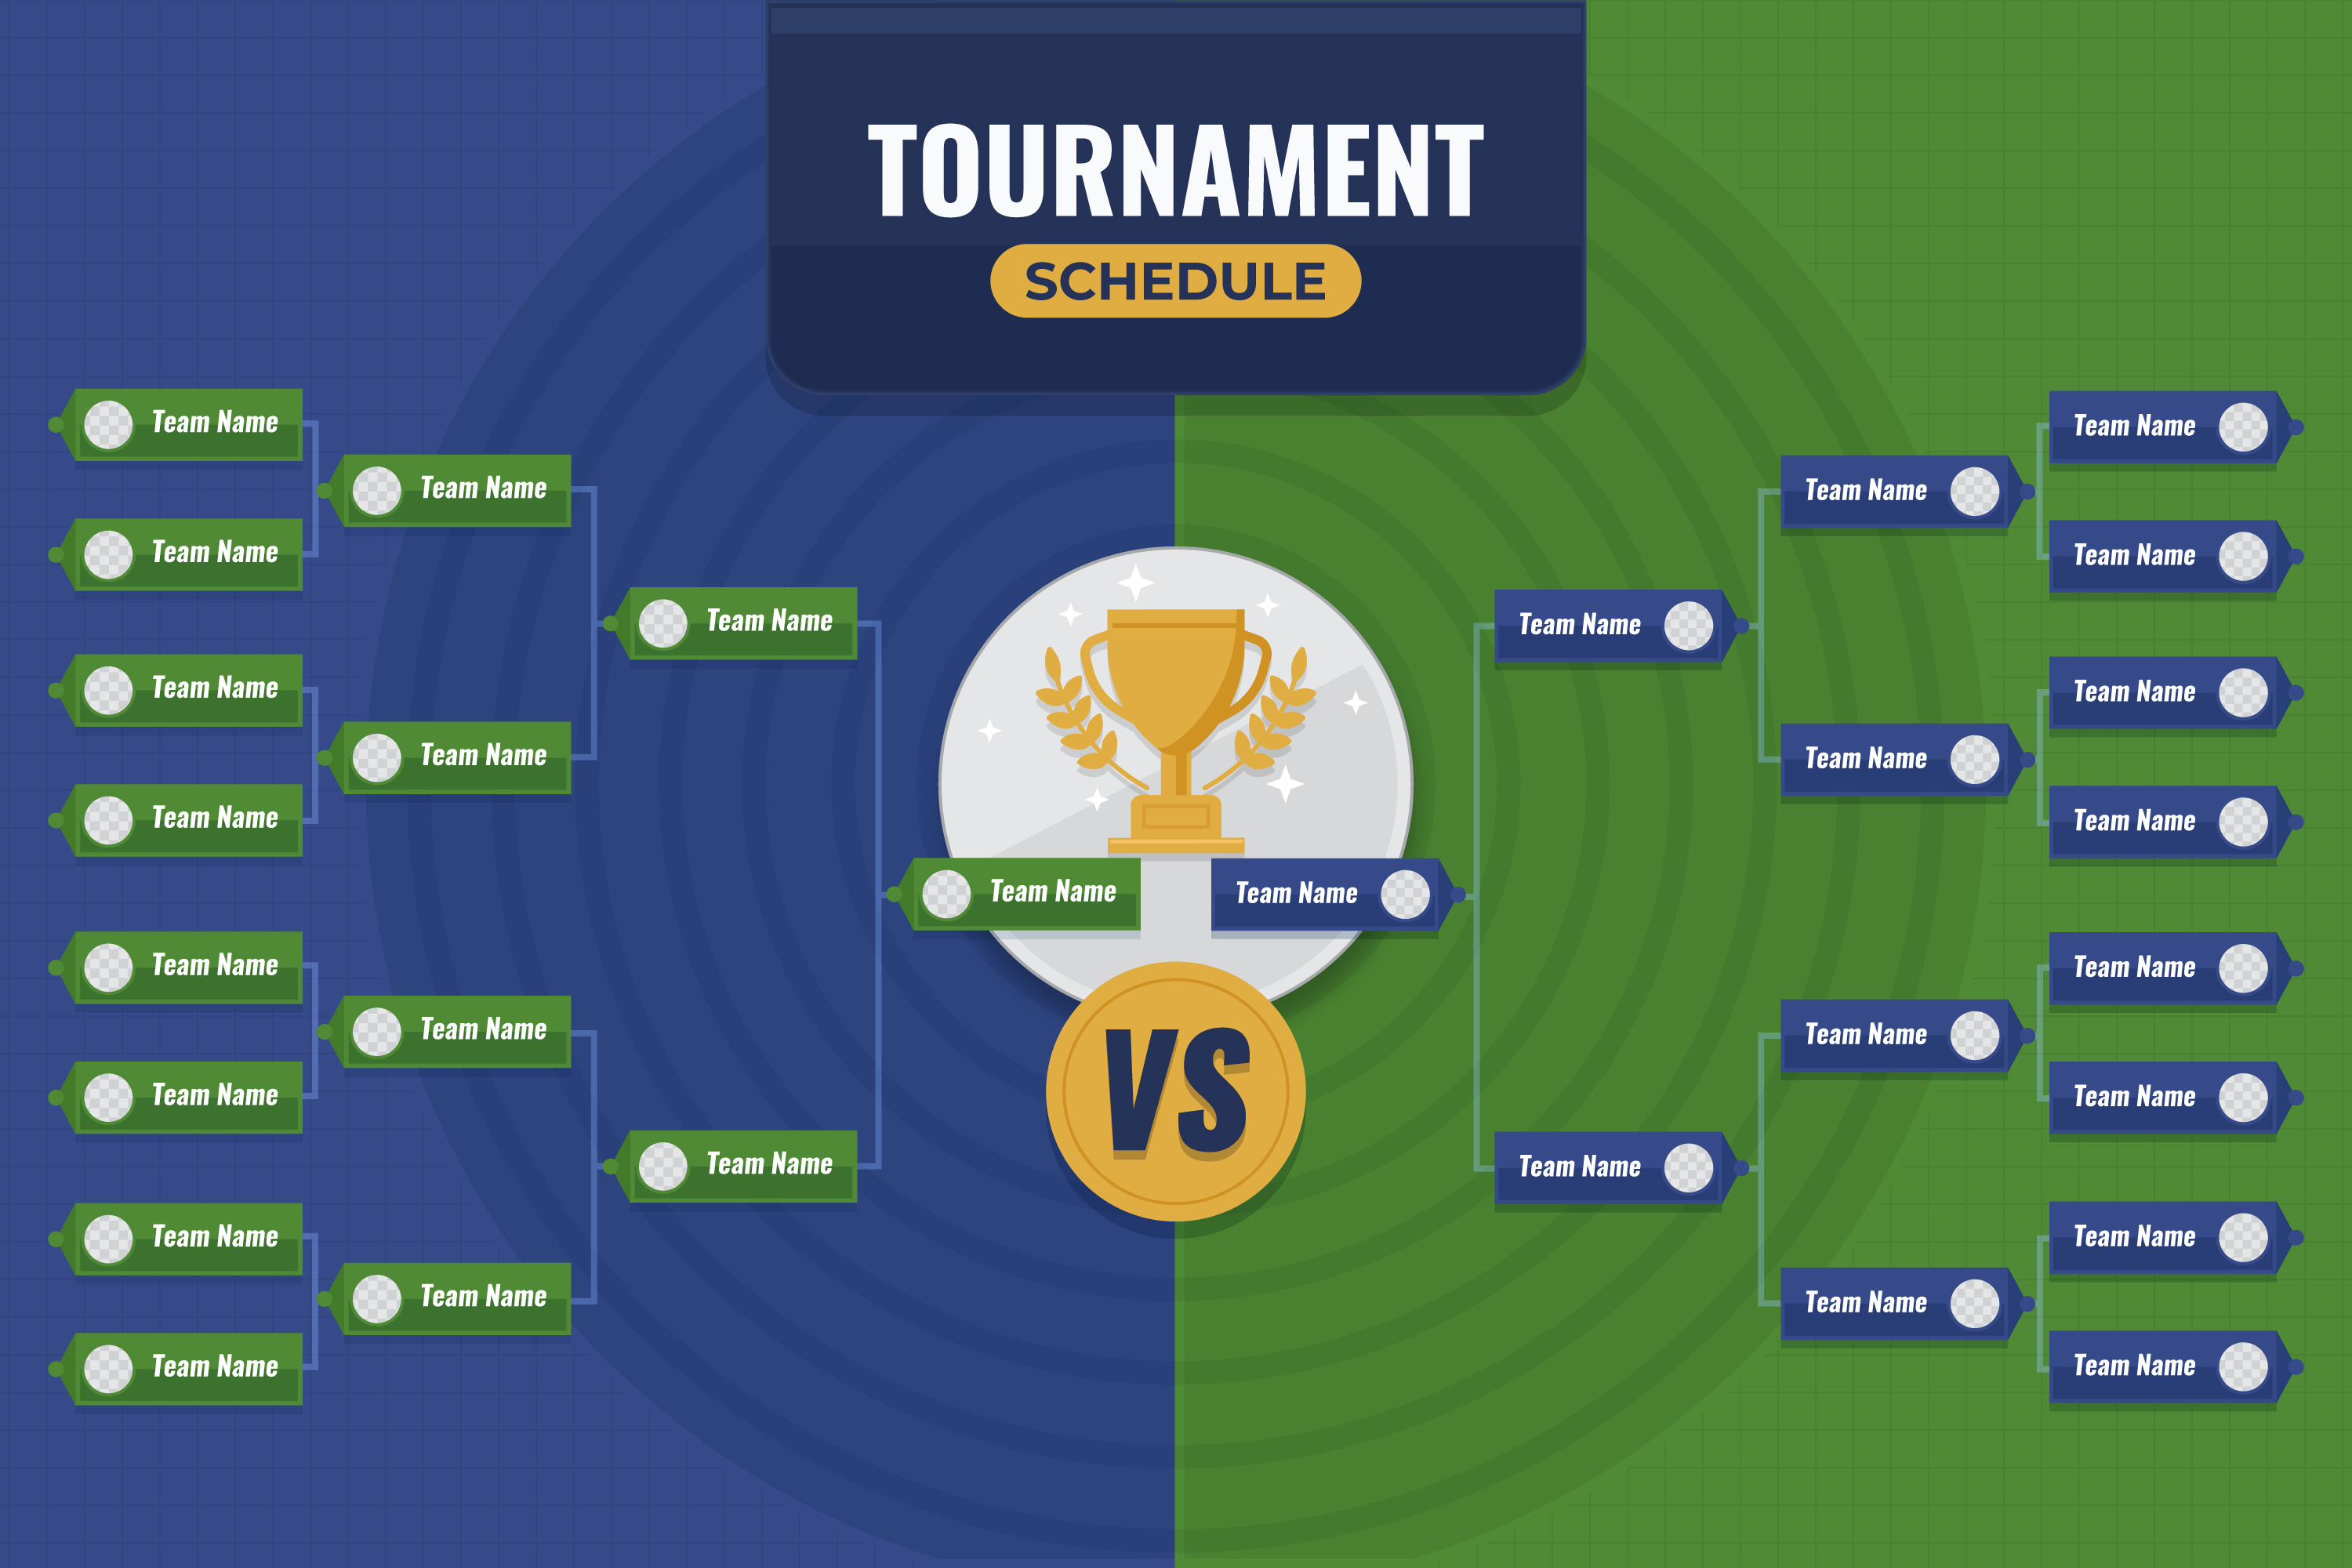 match schedule in tournament